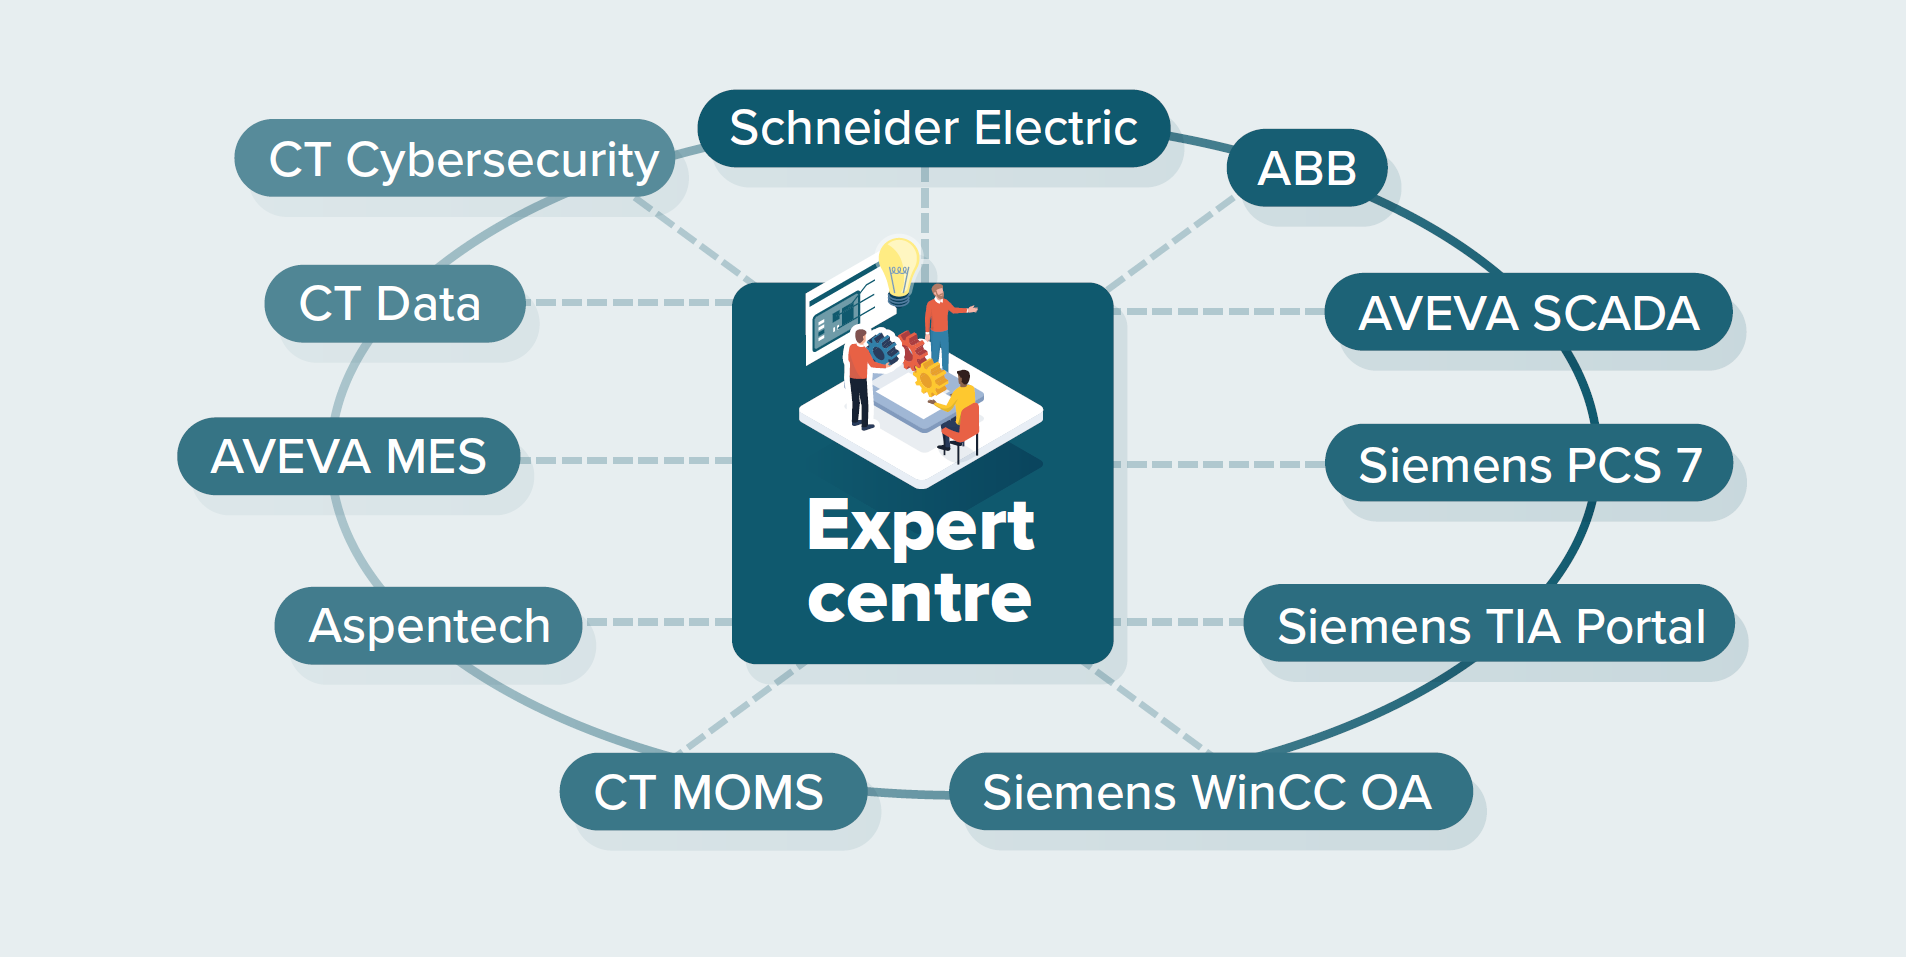 Expert centre